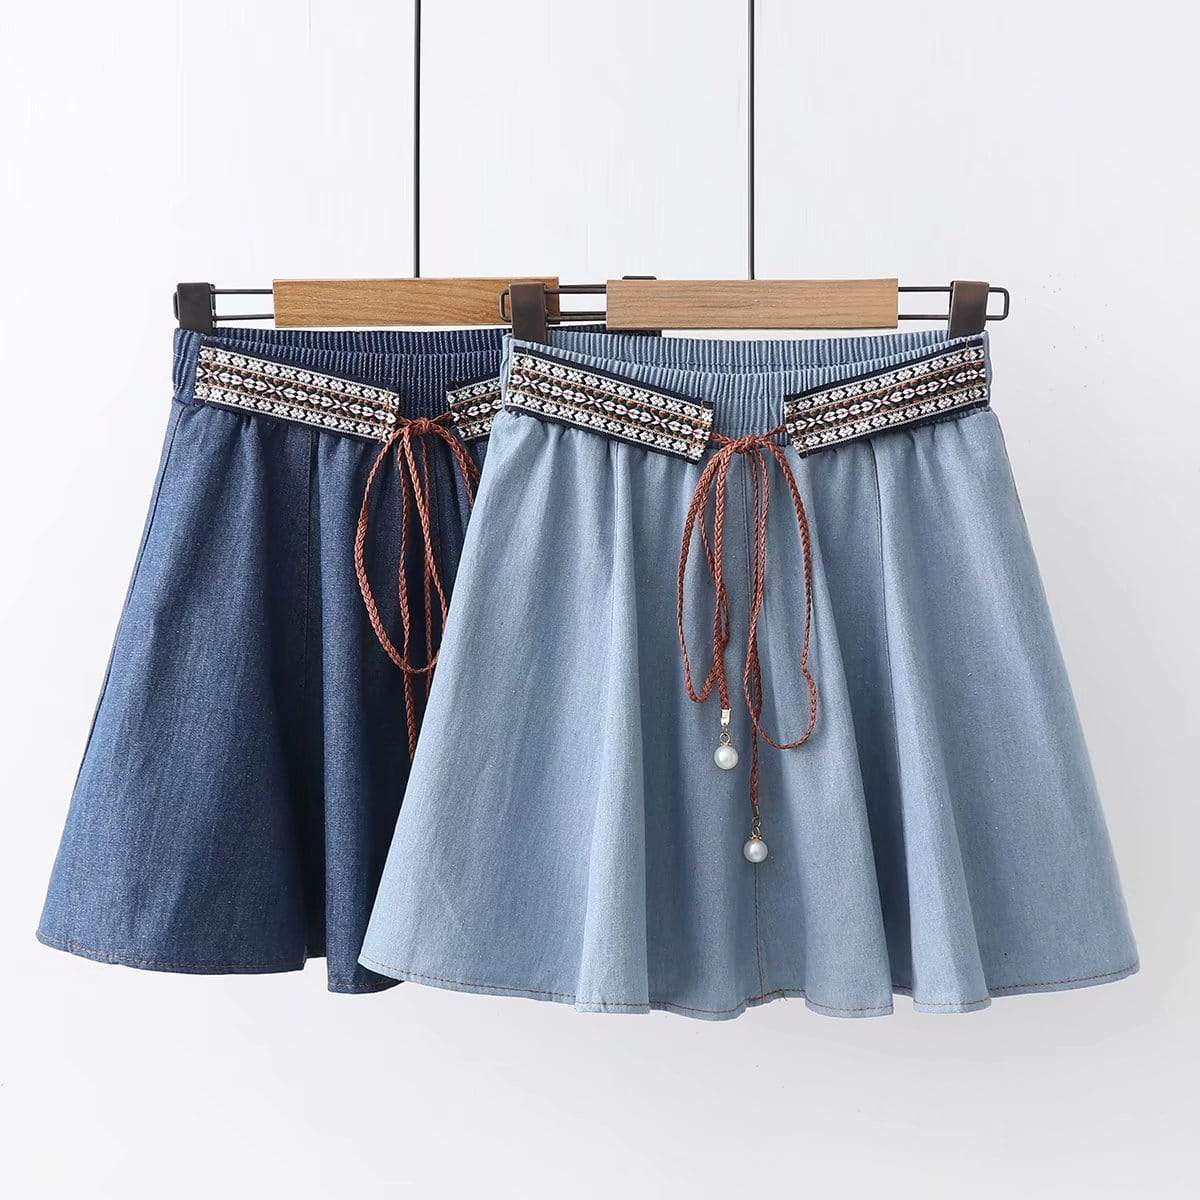 Kawaiifashion Faldas de jean cortas de estilo étnico de color puro de moda coreana para mujer con cinturón con cordones